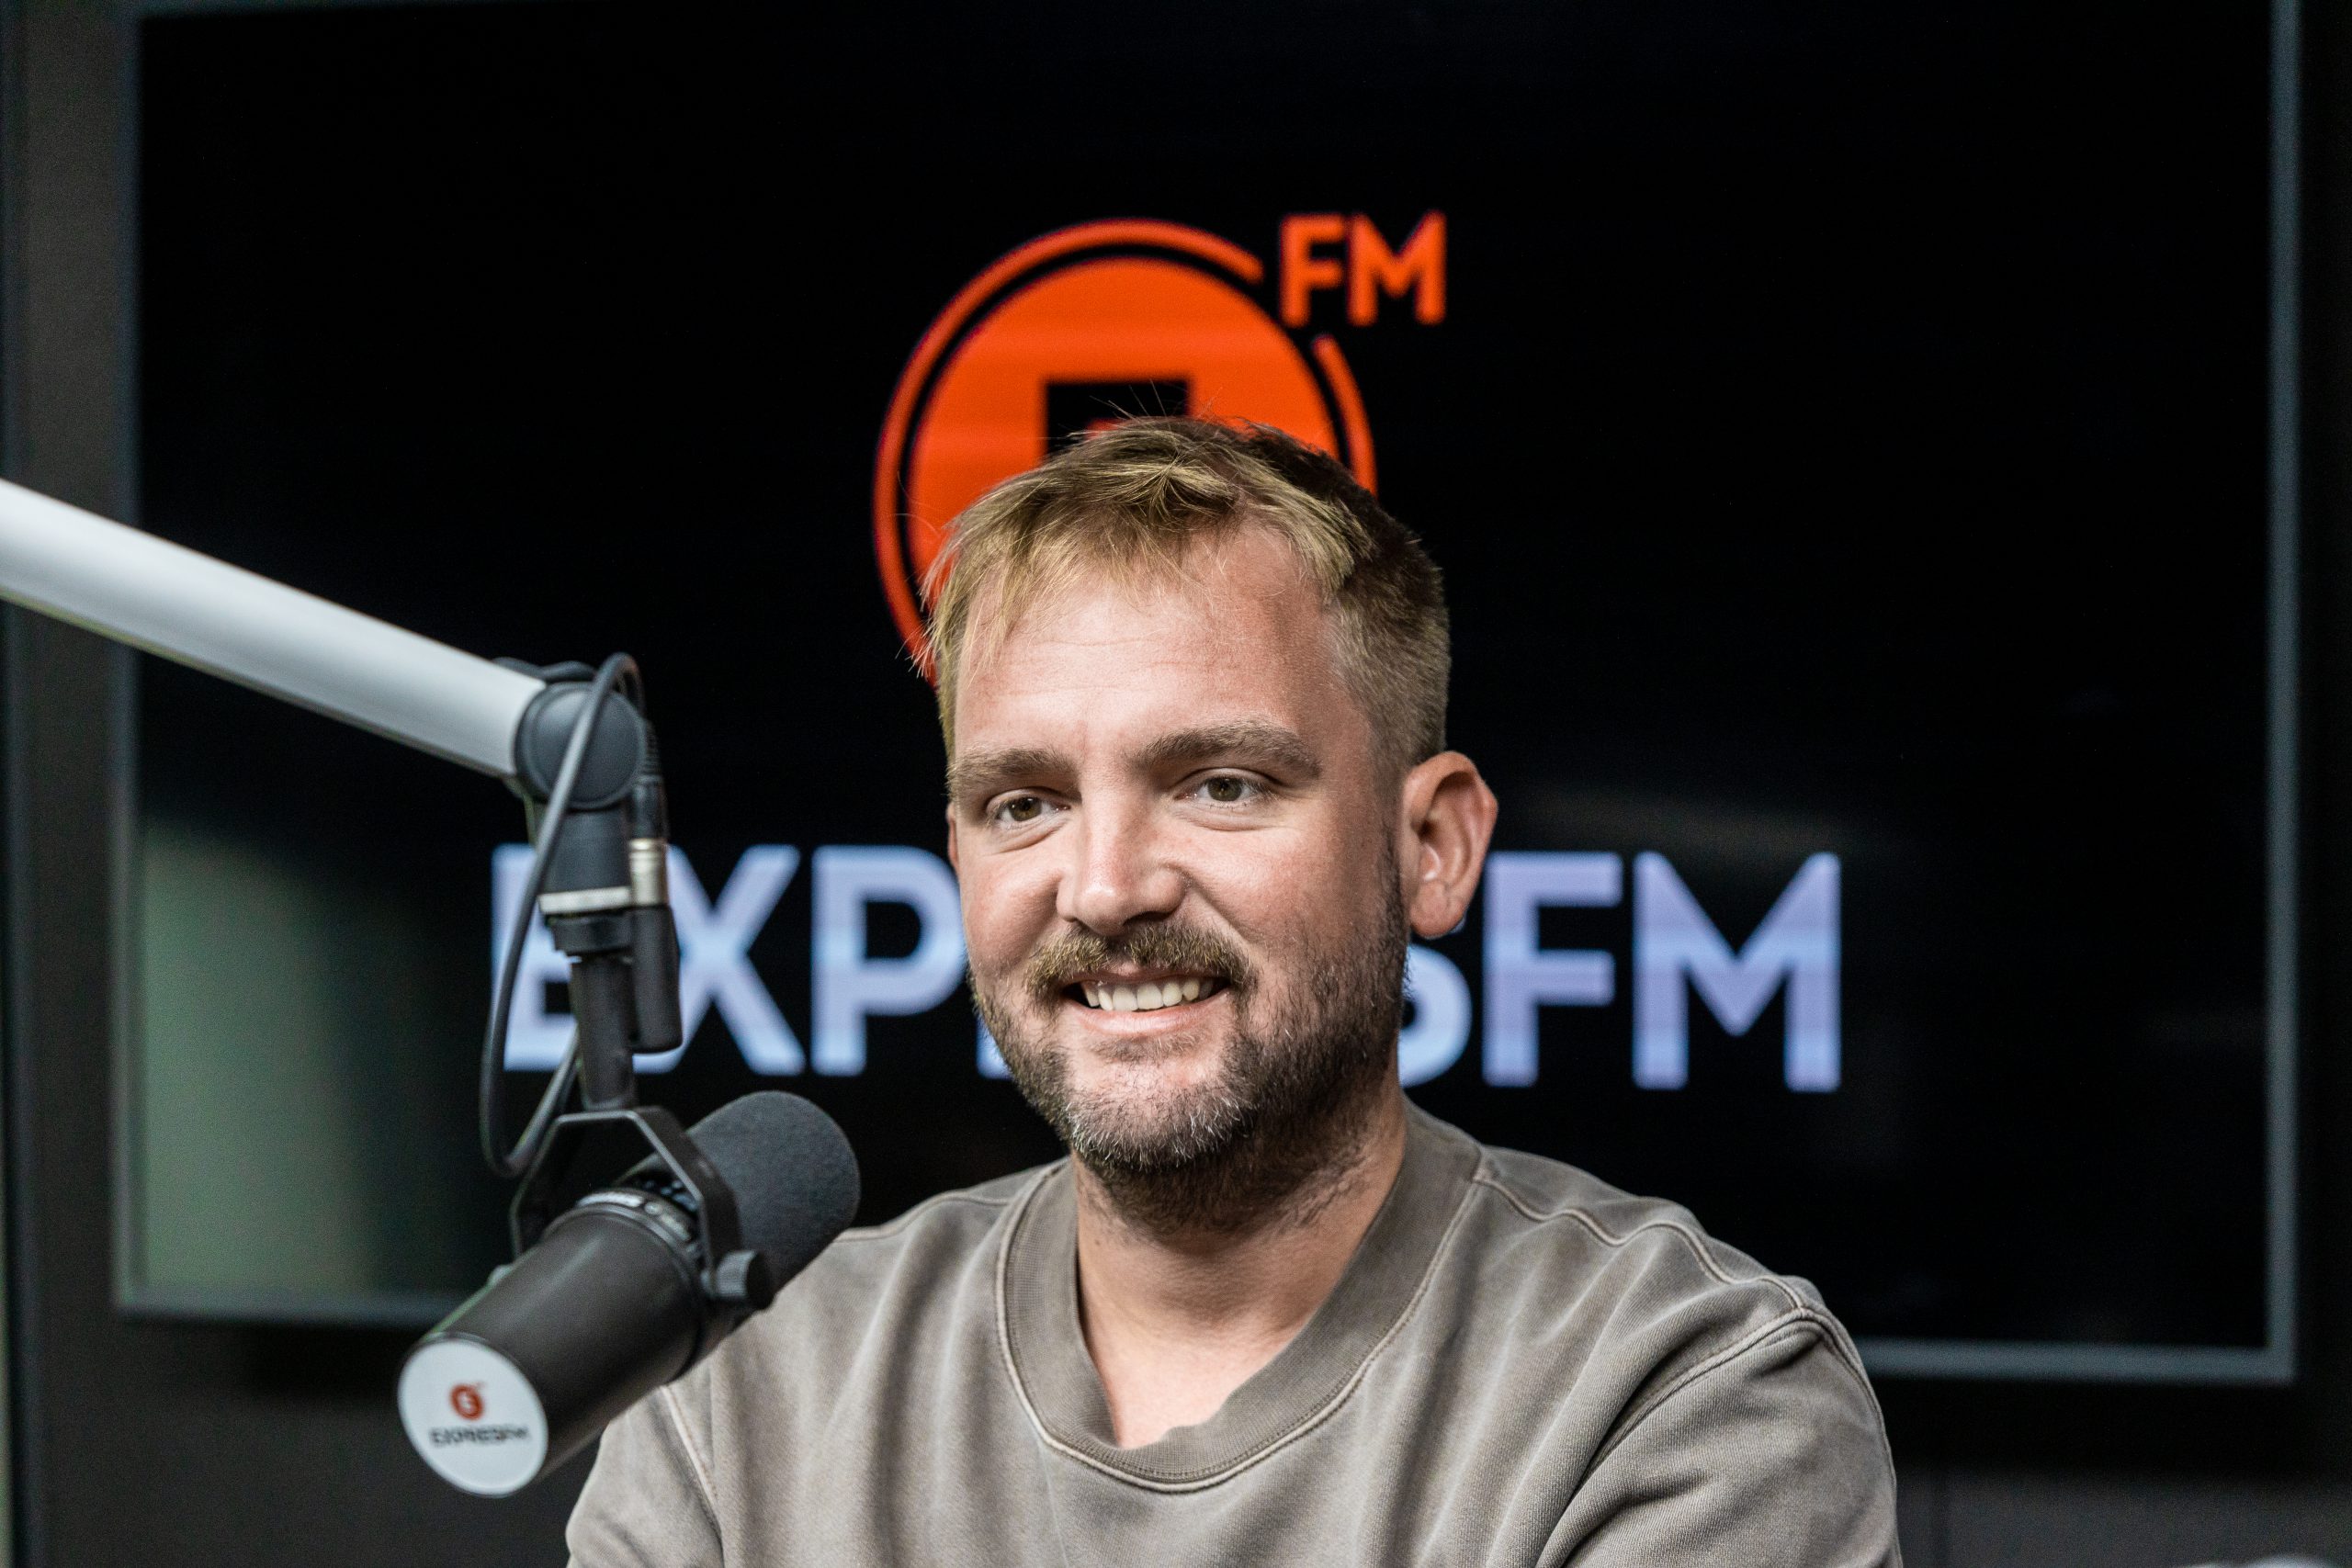 Libor Bouček se vrací do českého éteru! Moderovat bude každý všední den od 10:00 na rádiu Expres FM 